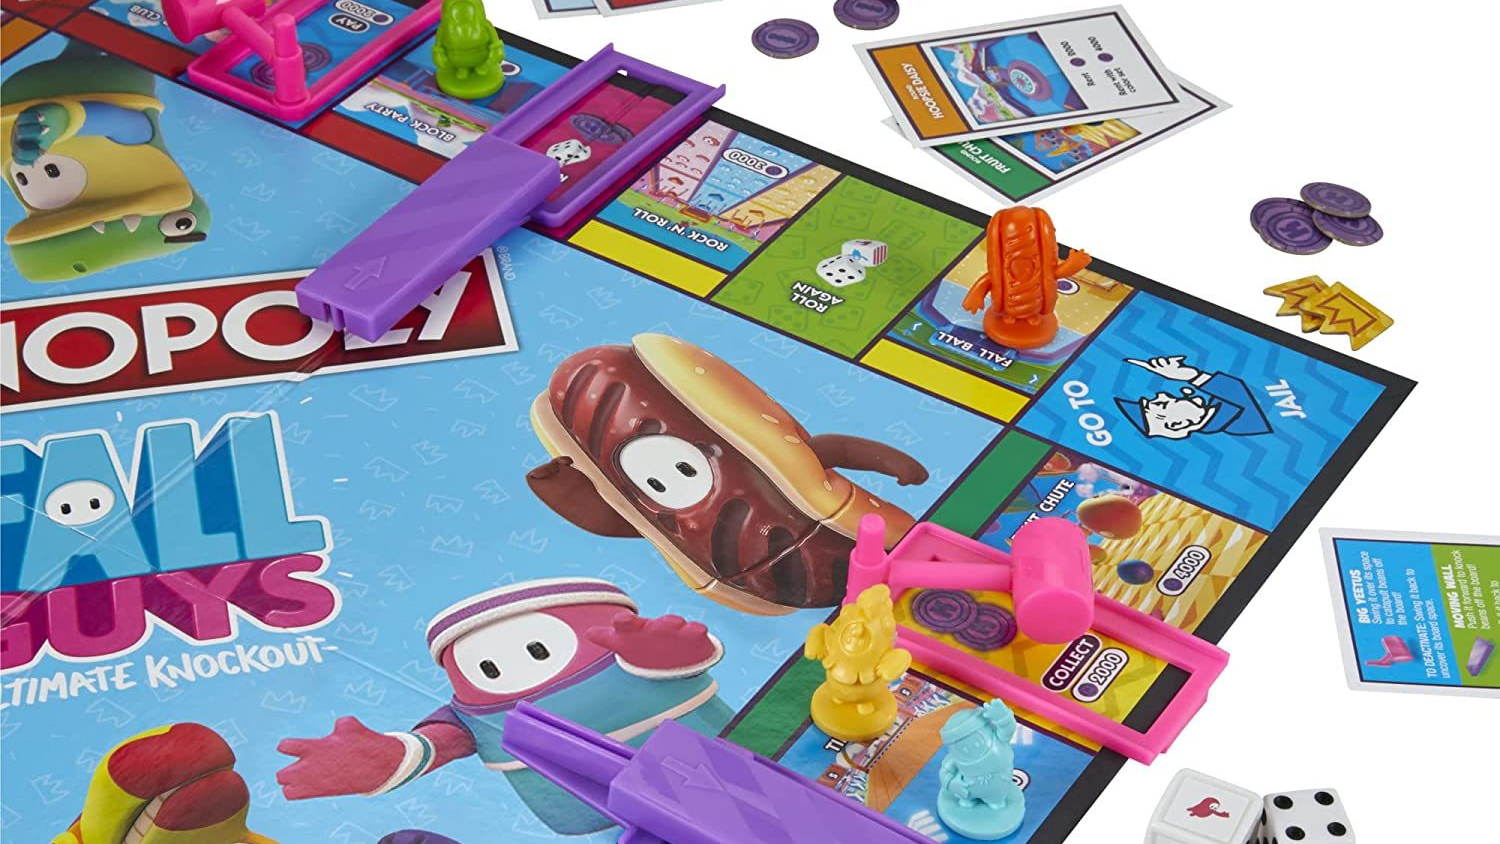 Fall Guys se spojuje s Monopoly, deskovka nabídne skutečné překážky